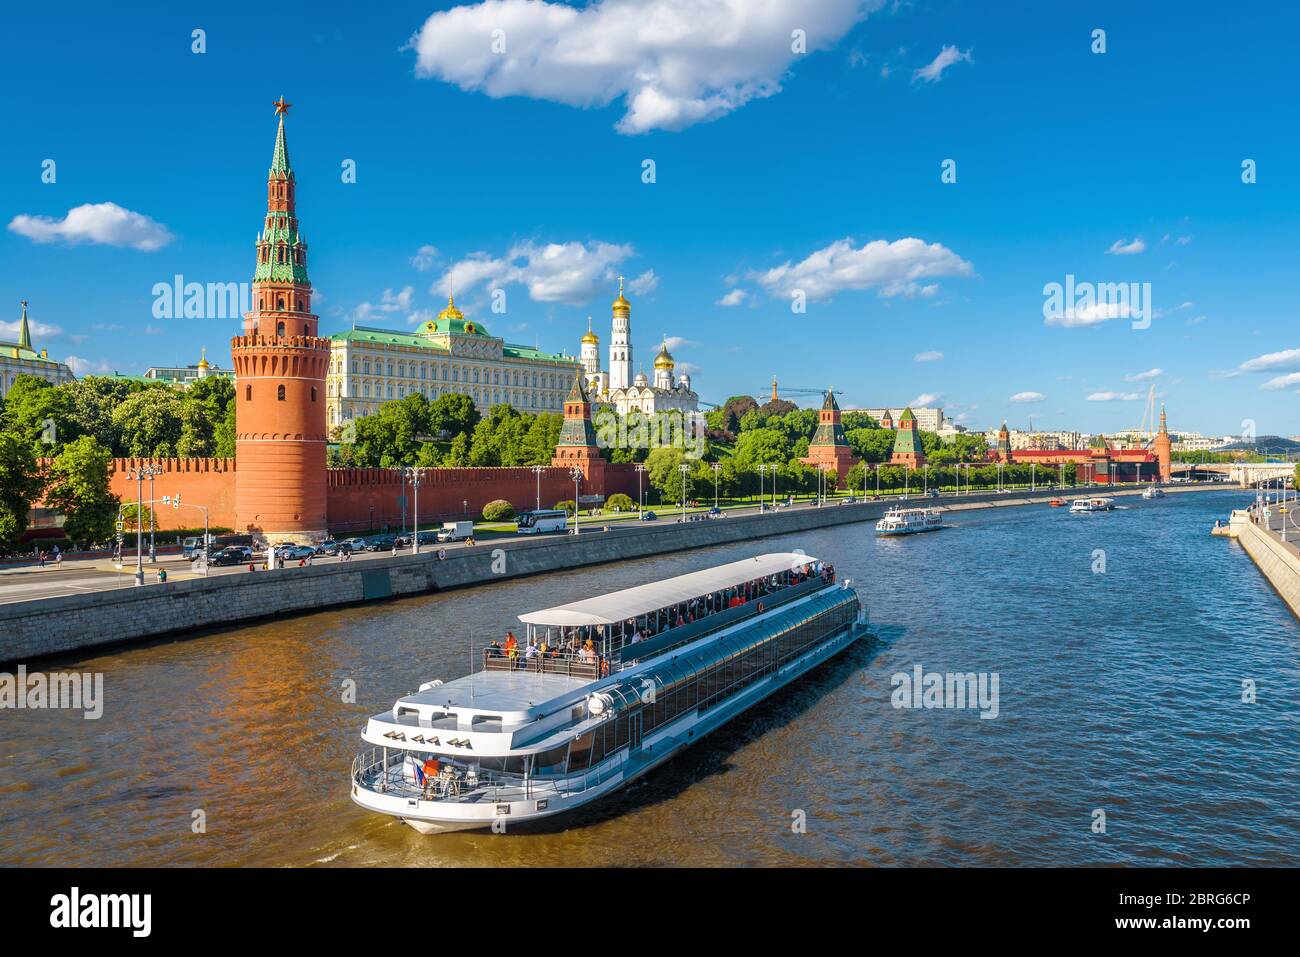 Moskau Zentrum im Sommer, Russland. Berühmte Moskauer Kreml ist eine der beliebtesten Touristenattraktionen der Stadt. Panoramalicht auf das Moskauer Wahrzeichen und Schiff auf Moskwa Rive Stockfoto